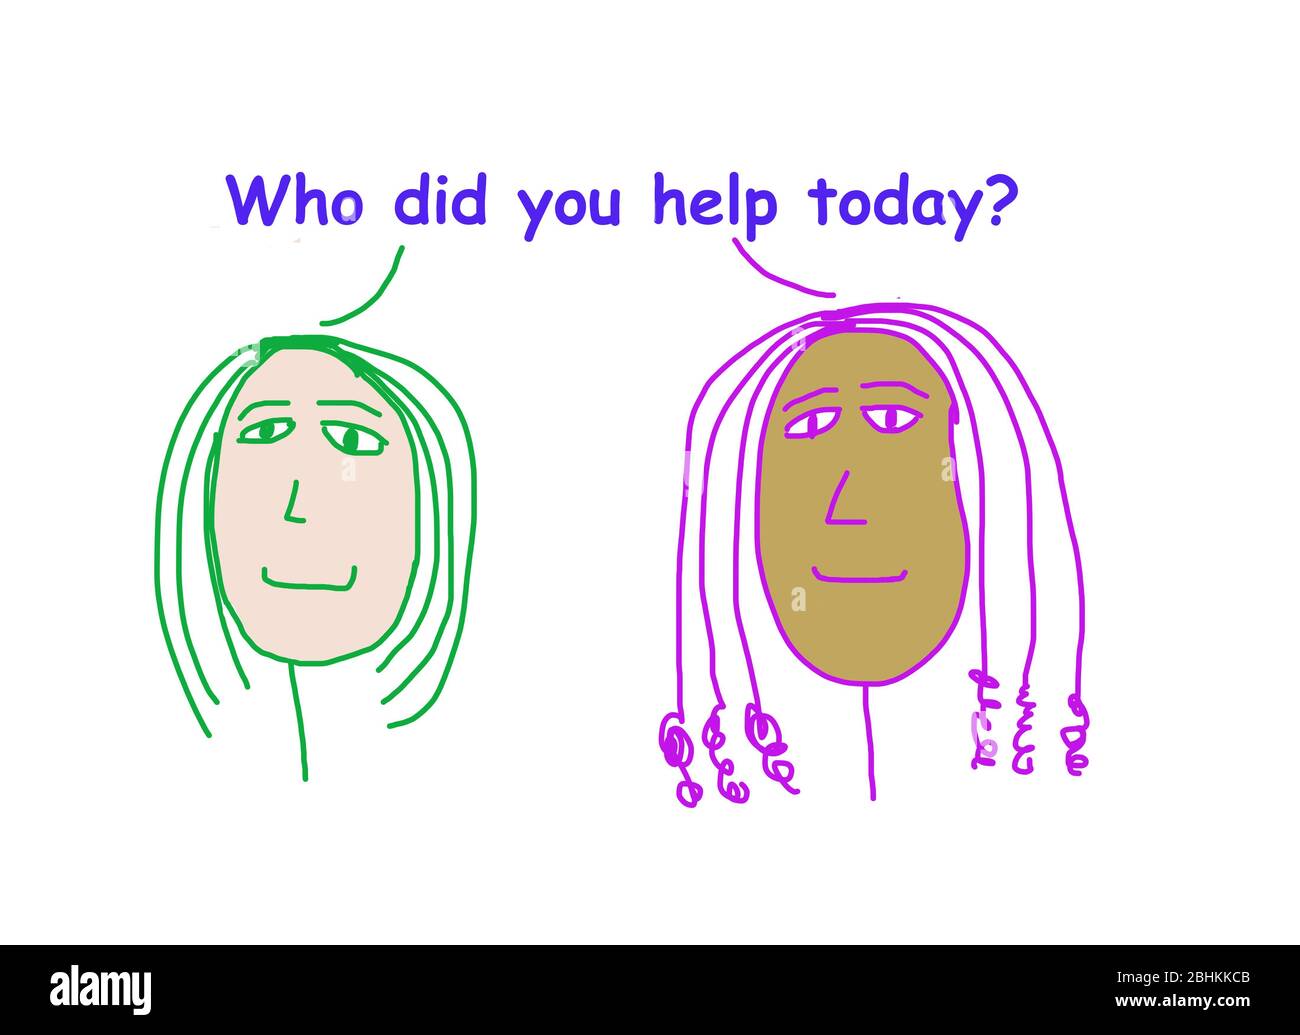 Dessin animé couleur de deux femmes ethniquement diverses demandant qui avez-vous aidé aujourd'hui? Banque D'Images